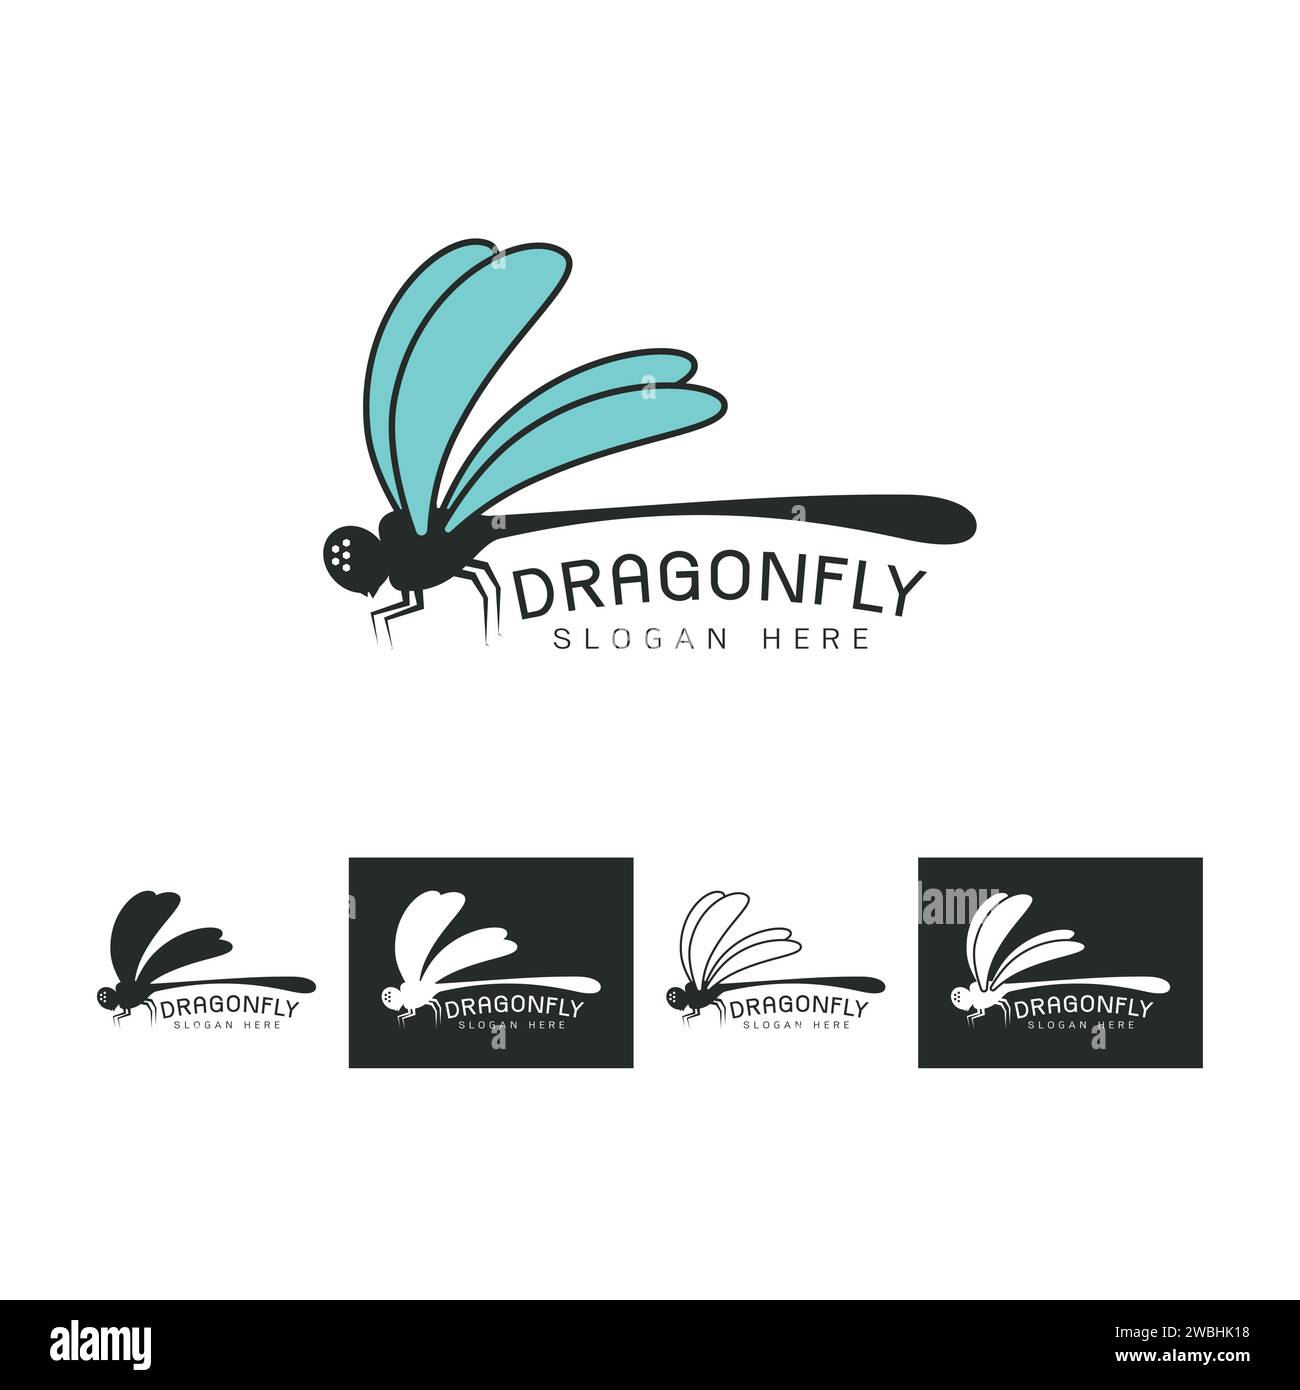 Ensemble de belle icône de logo libellule, image stylisée du modèle de logo Dragonfly, tatouage Dragonfly, dessin au trait Dragonfly sur vecteur blanc Illustration de Vecteur